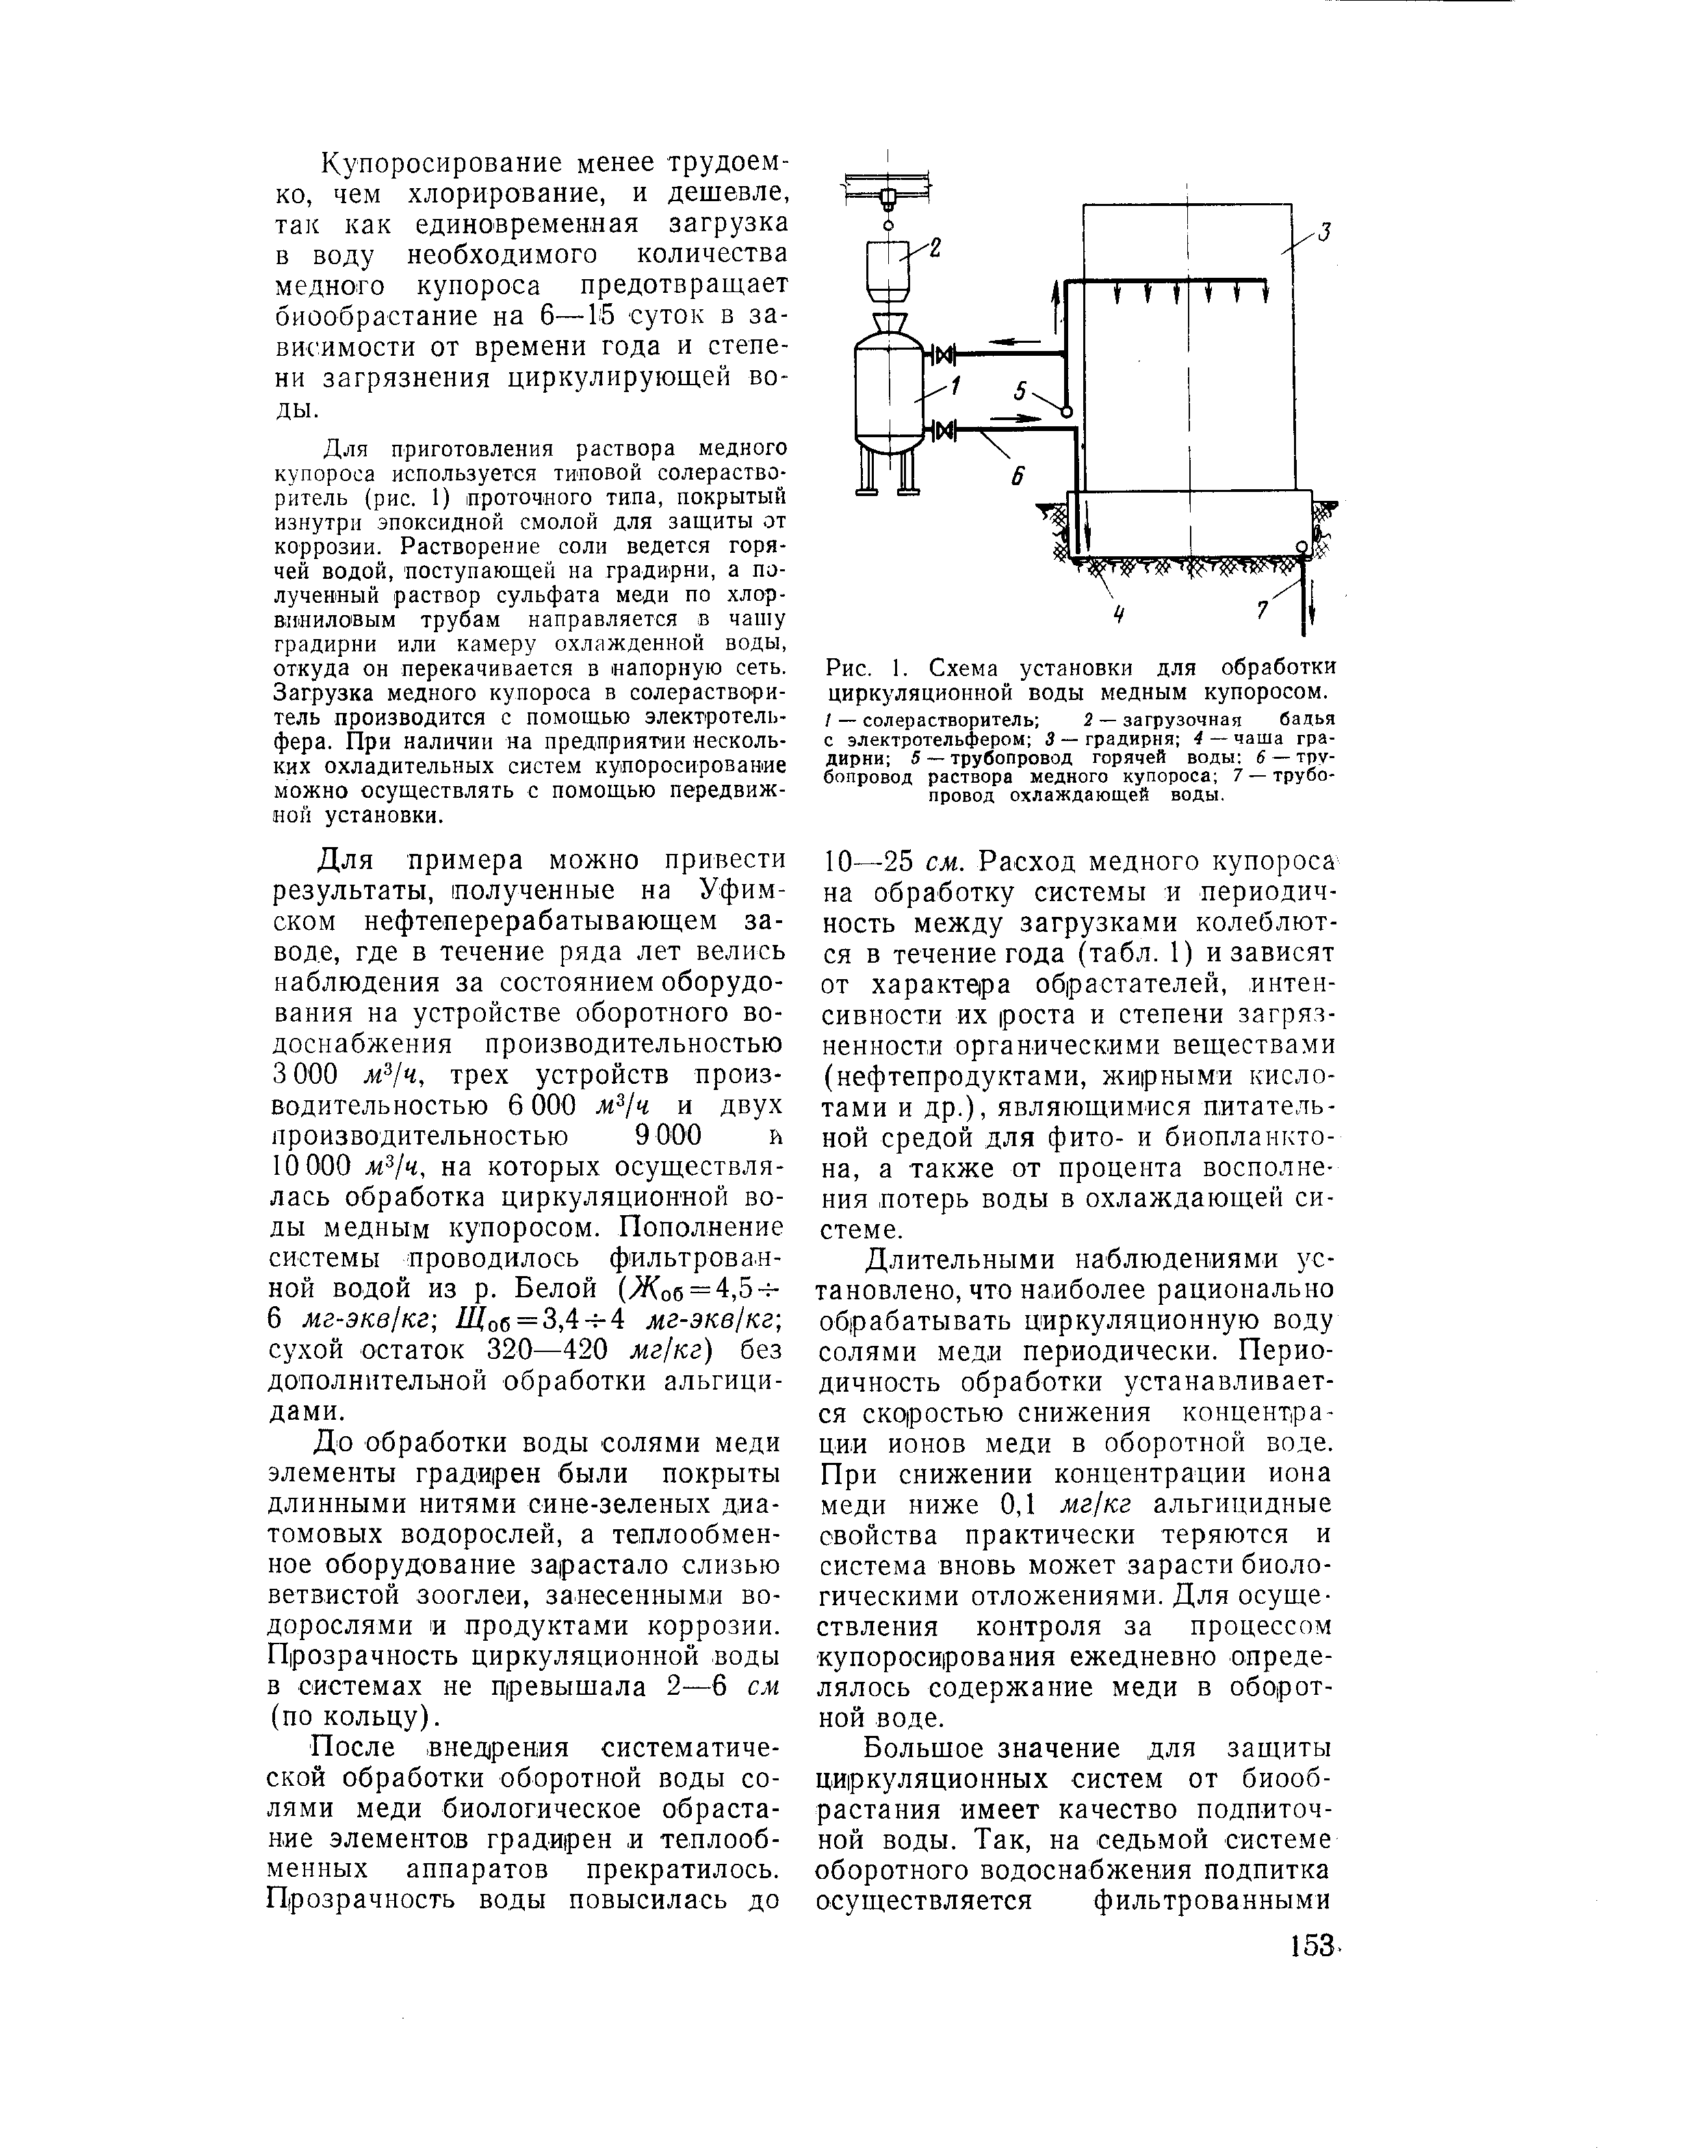 Рис. 1. Схема установки для обработки циркуляционной воды медным купоросом.
